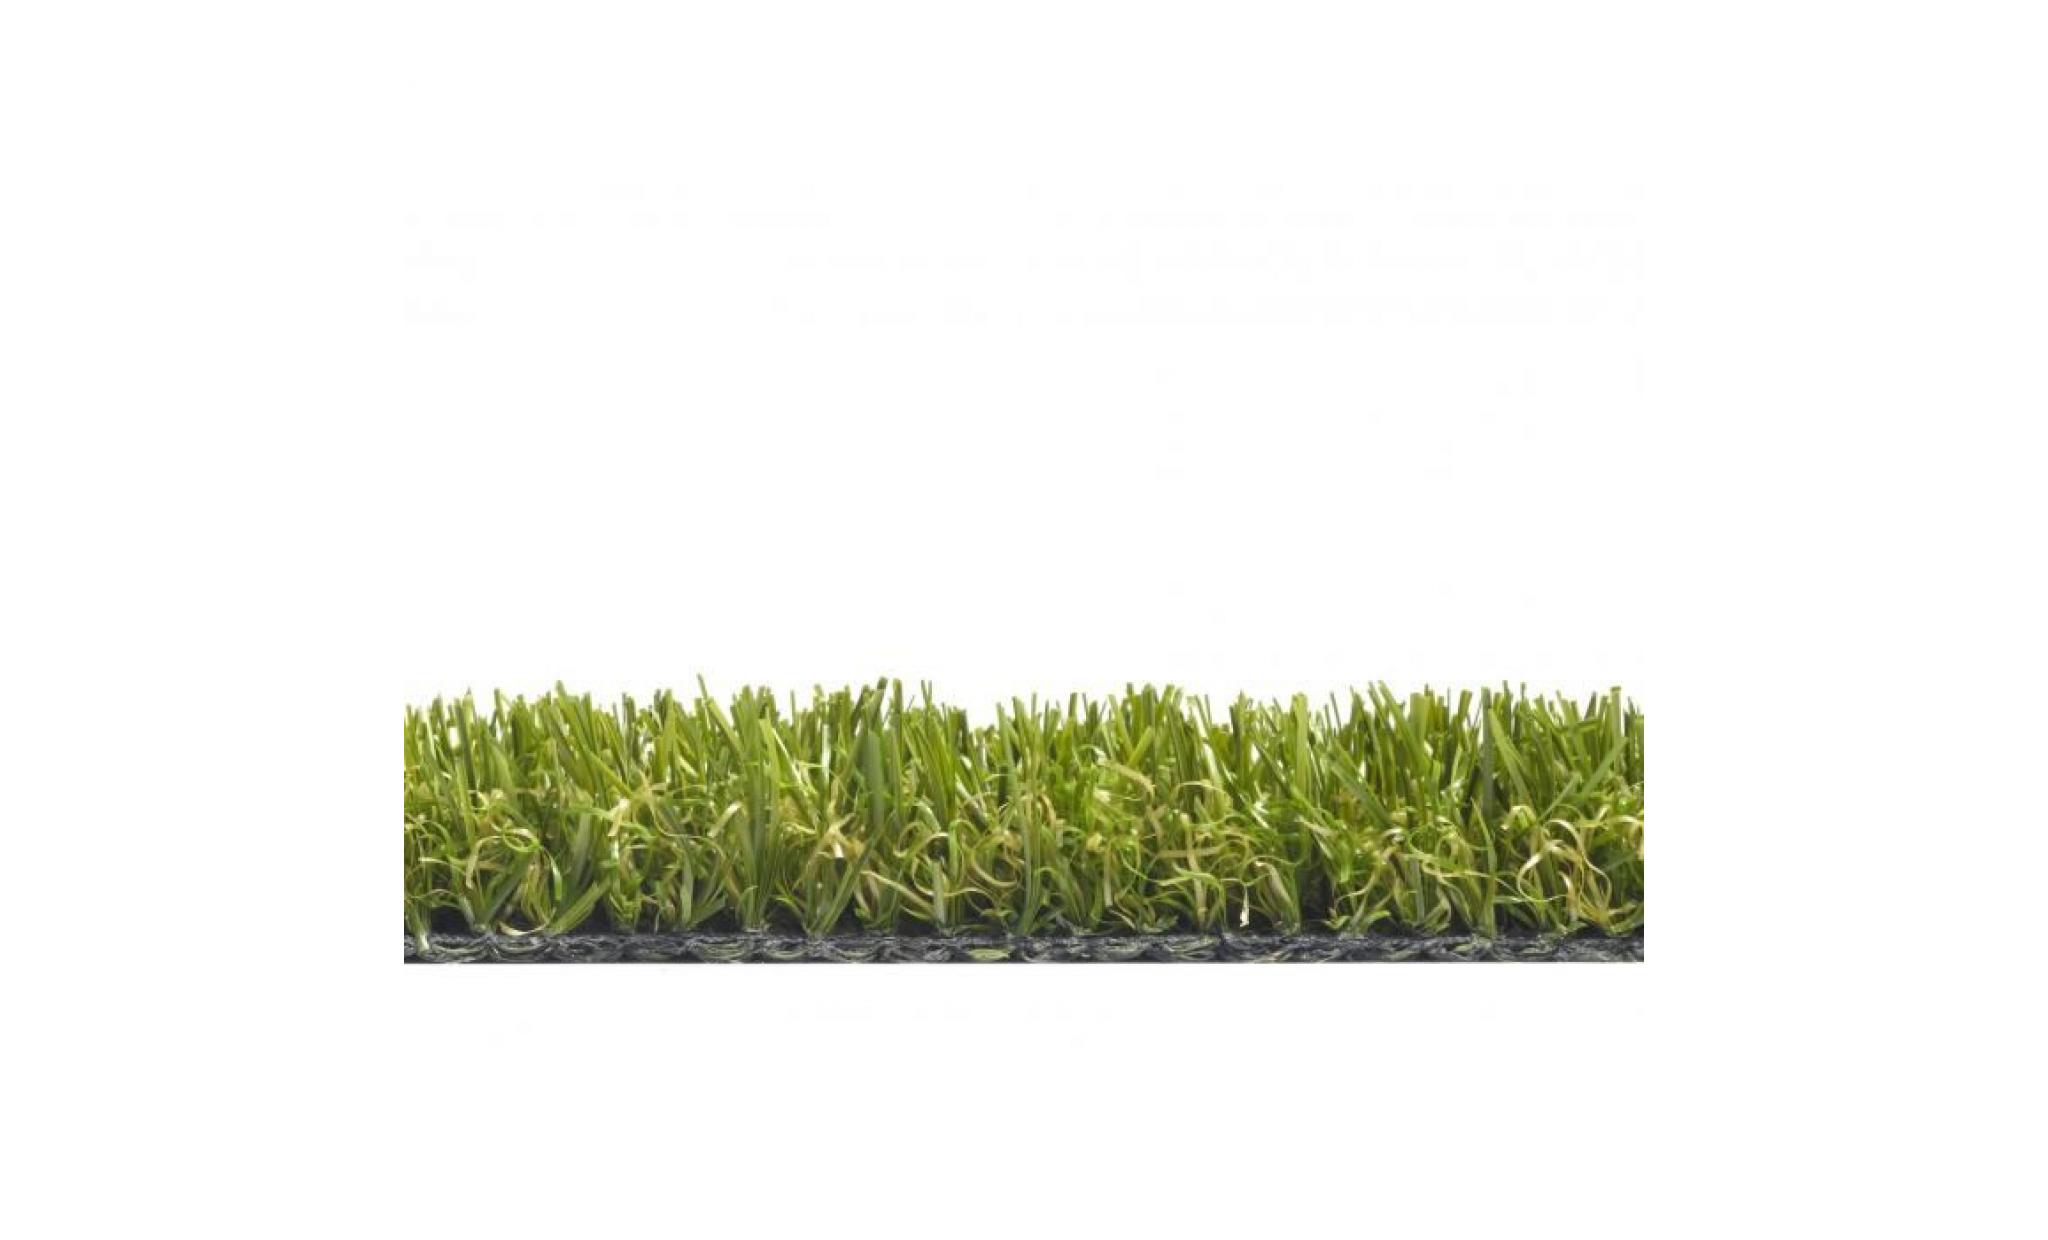 chelsea   tapis type luxe gazon artificiel – pour jardin, terrasse, balcon   vert  [200x100 cm] pas cher